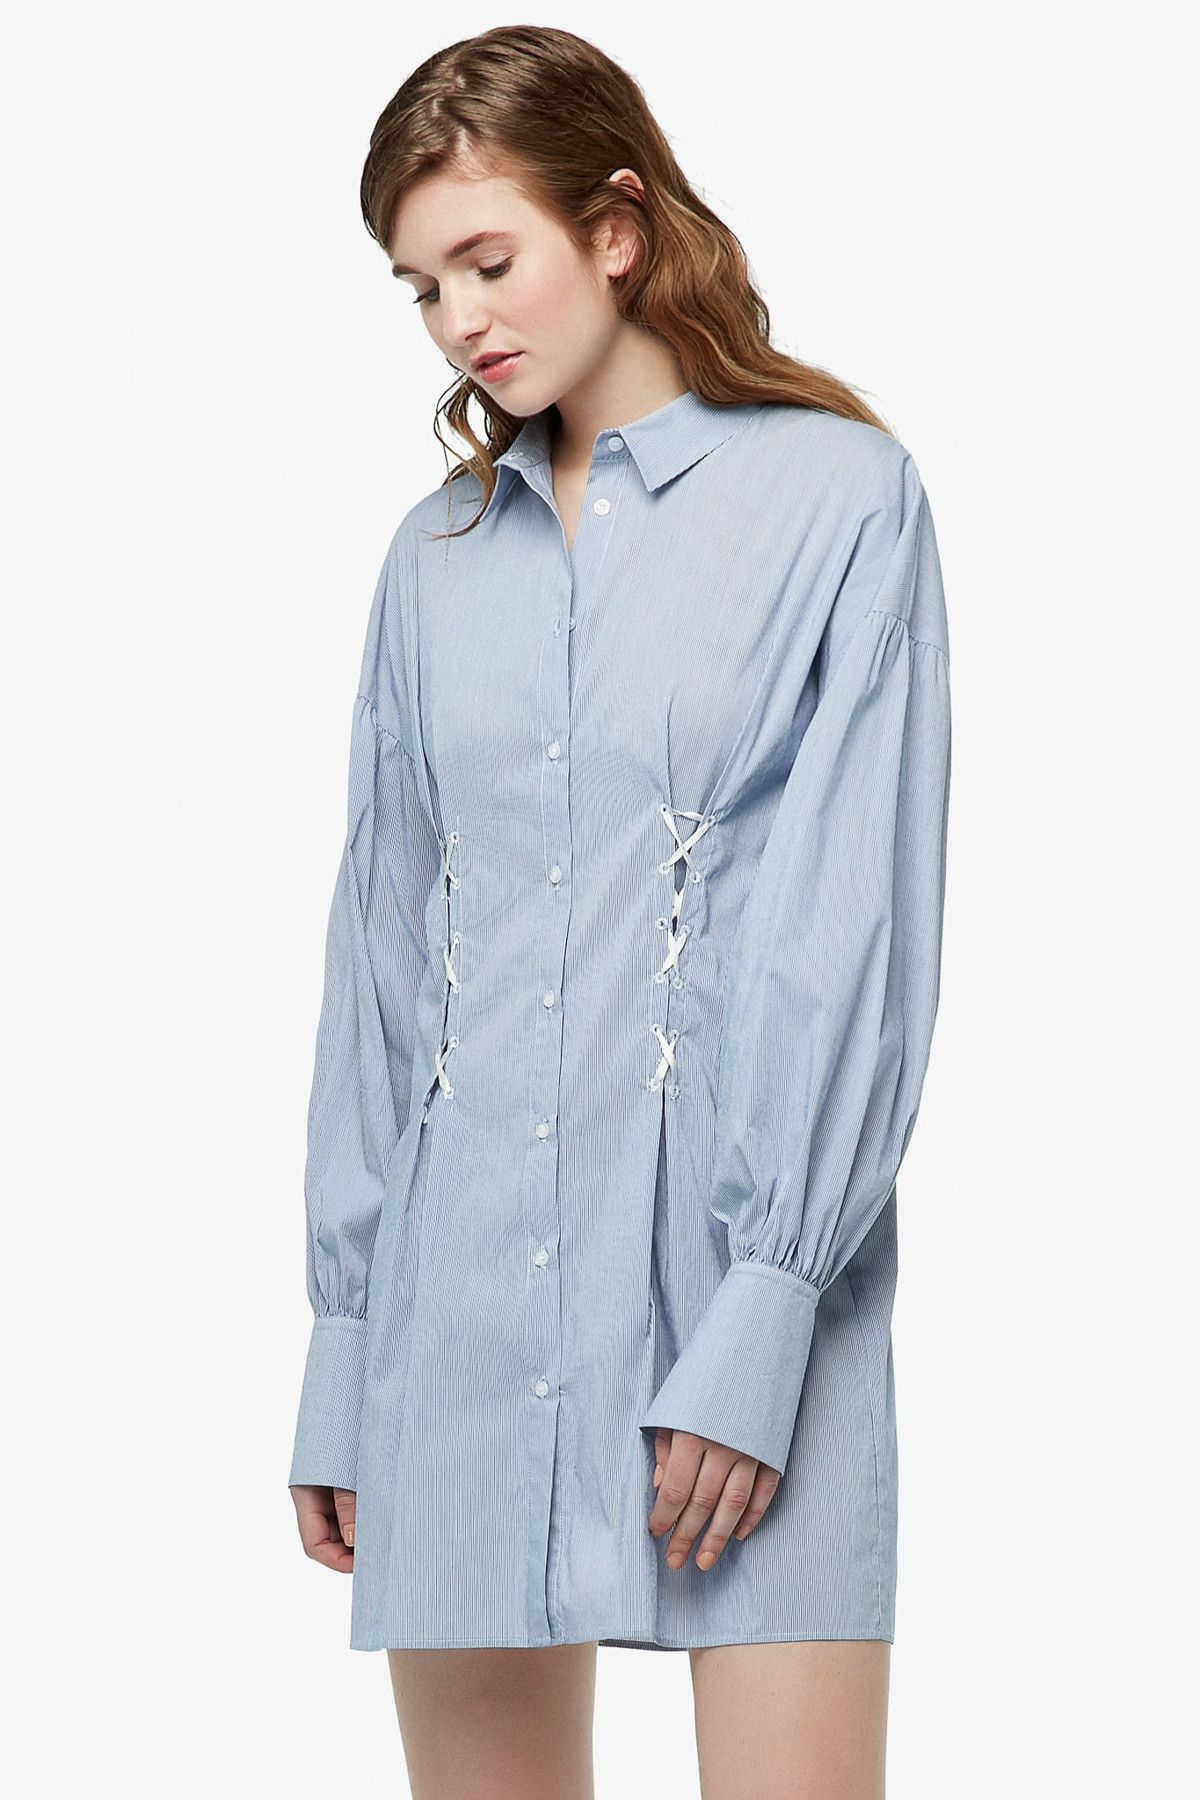 Twist Kadın Mavi Uzun Kollu Gömlek Elbise TS1170002253